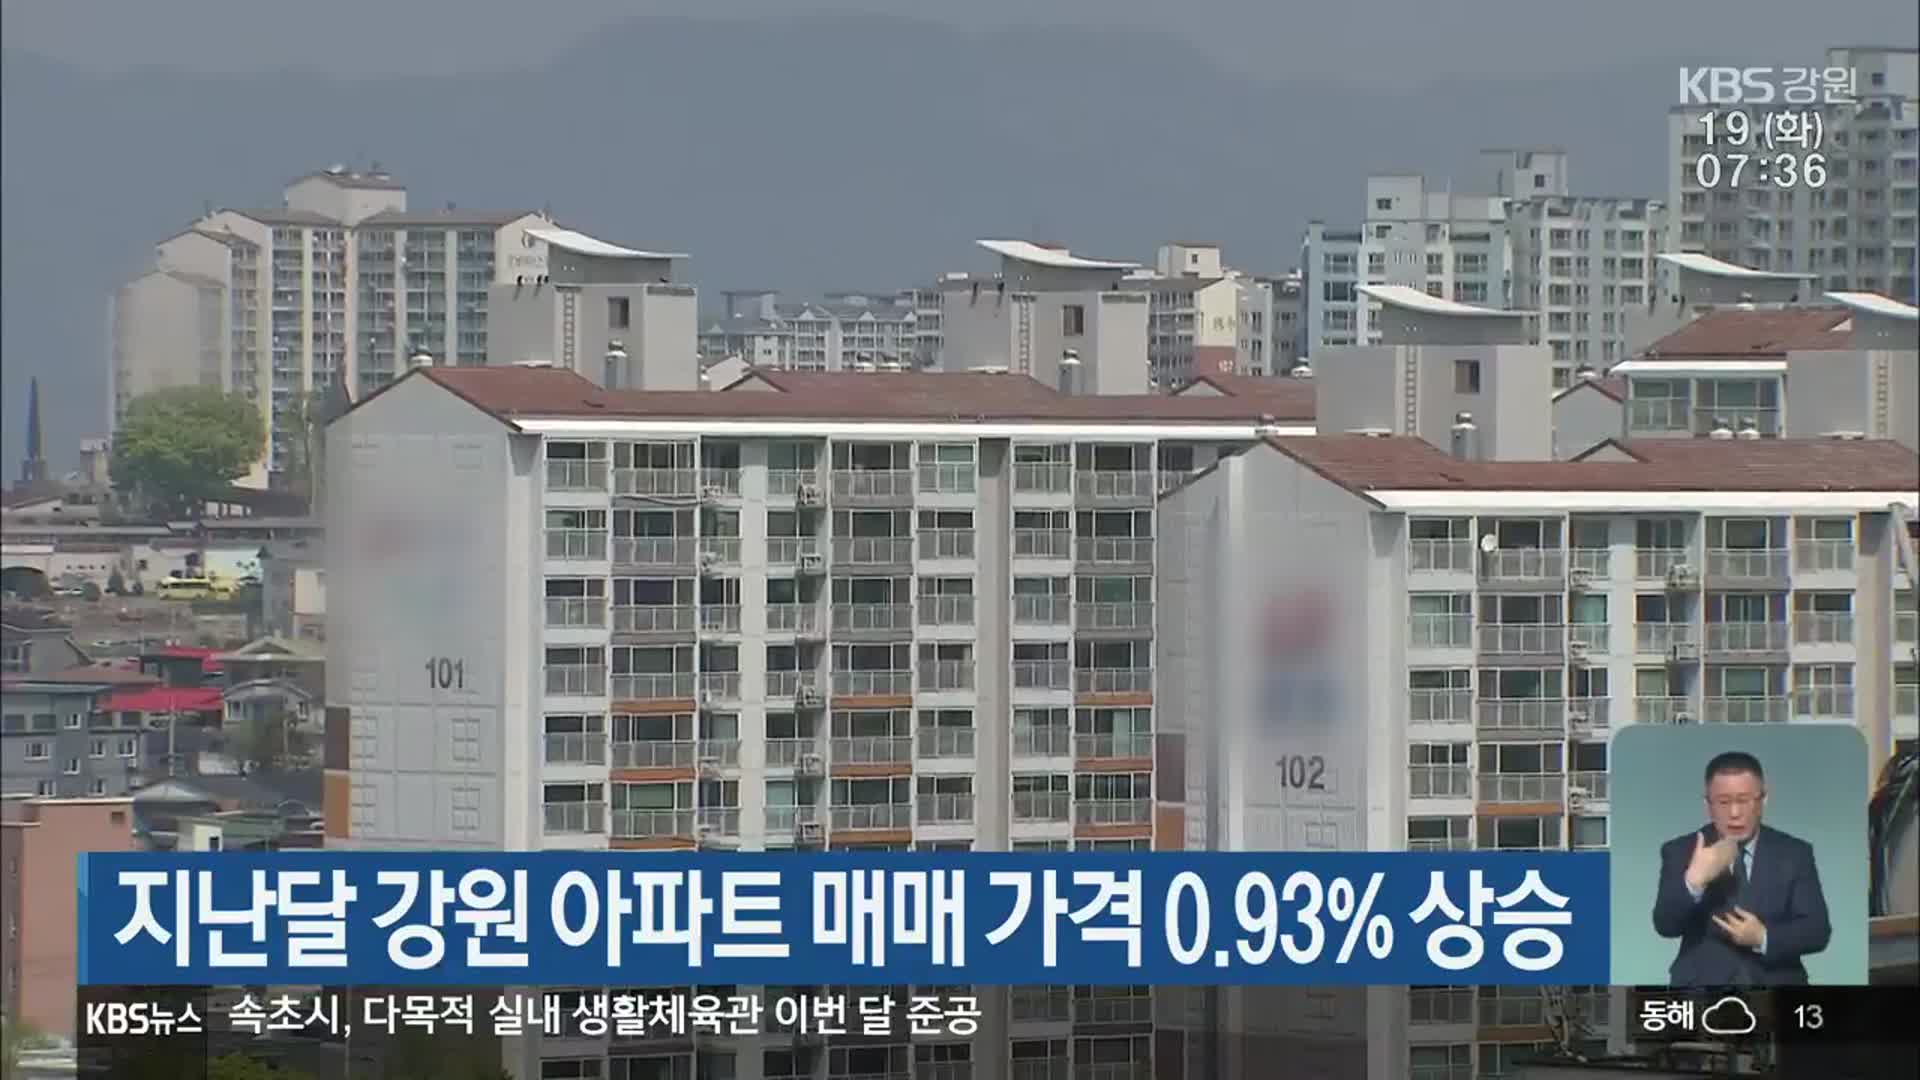 지난달 강원 아파트 매매 가격 0.93% 상승